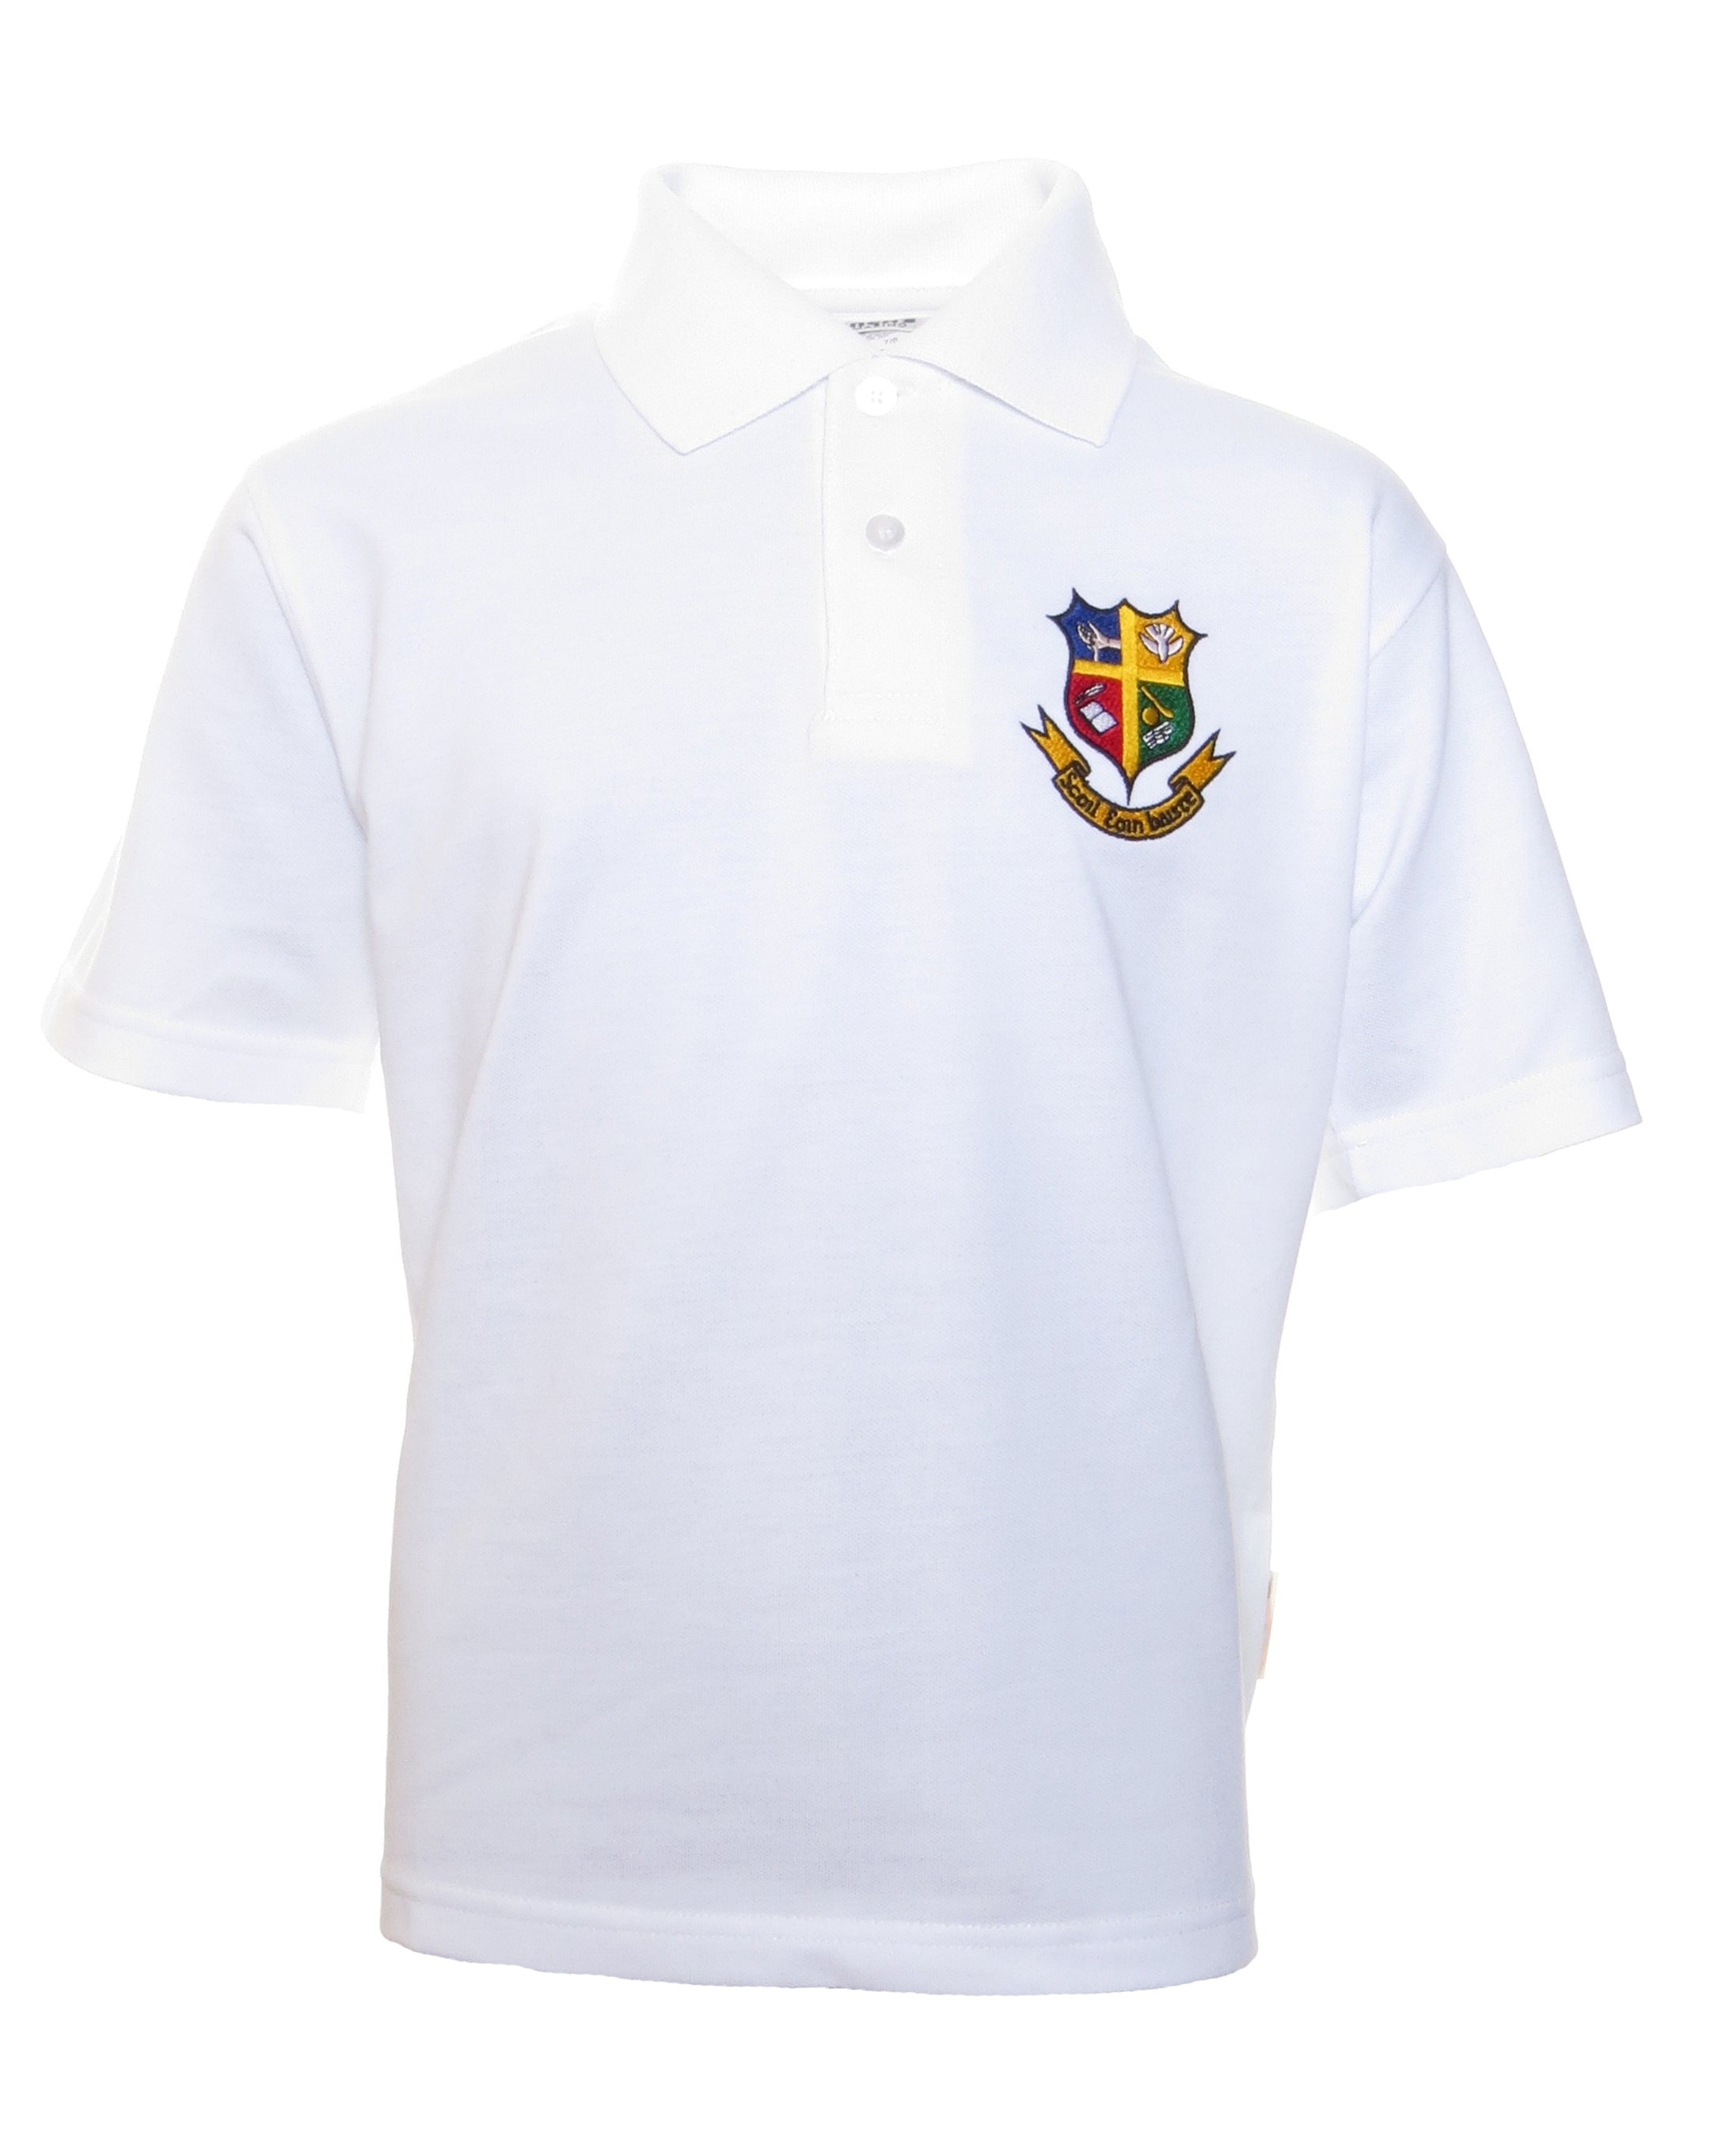 Belgrove Snr Boys Polo Shirt